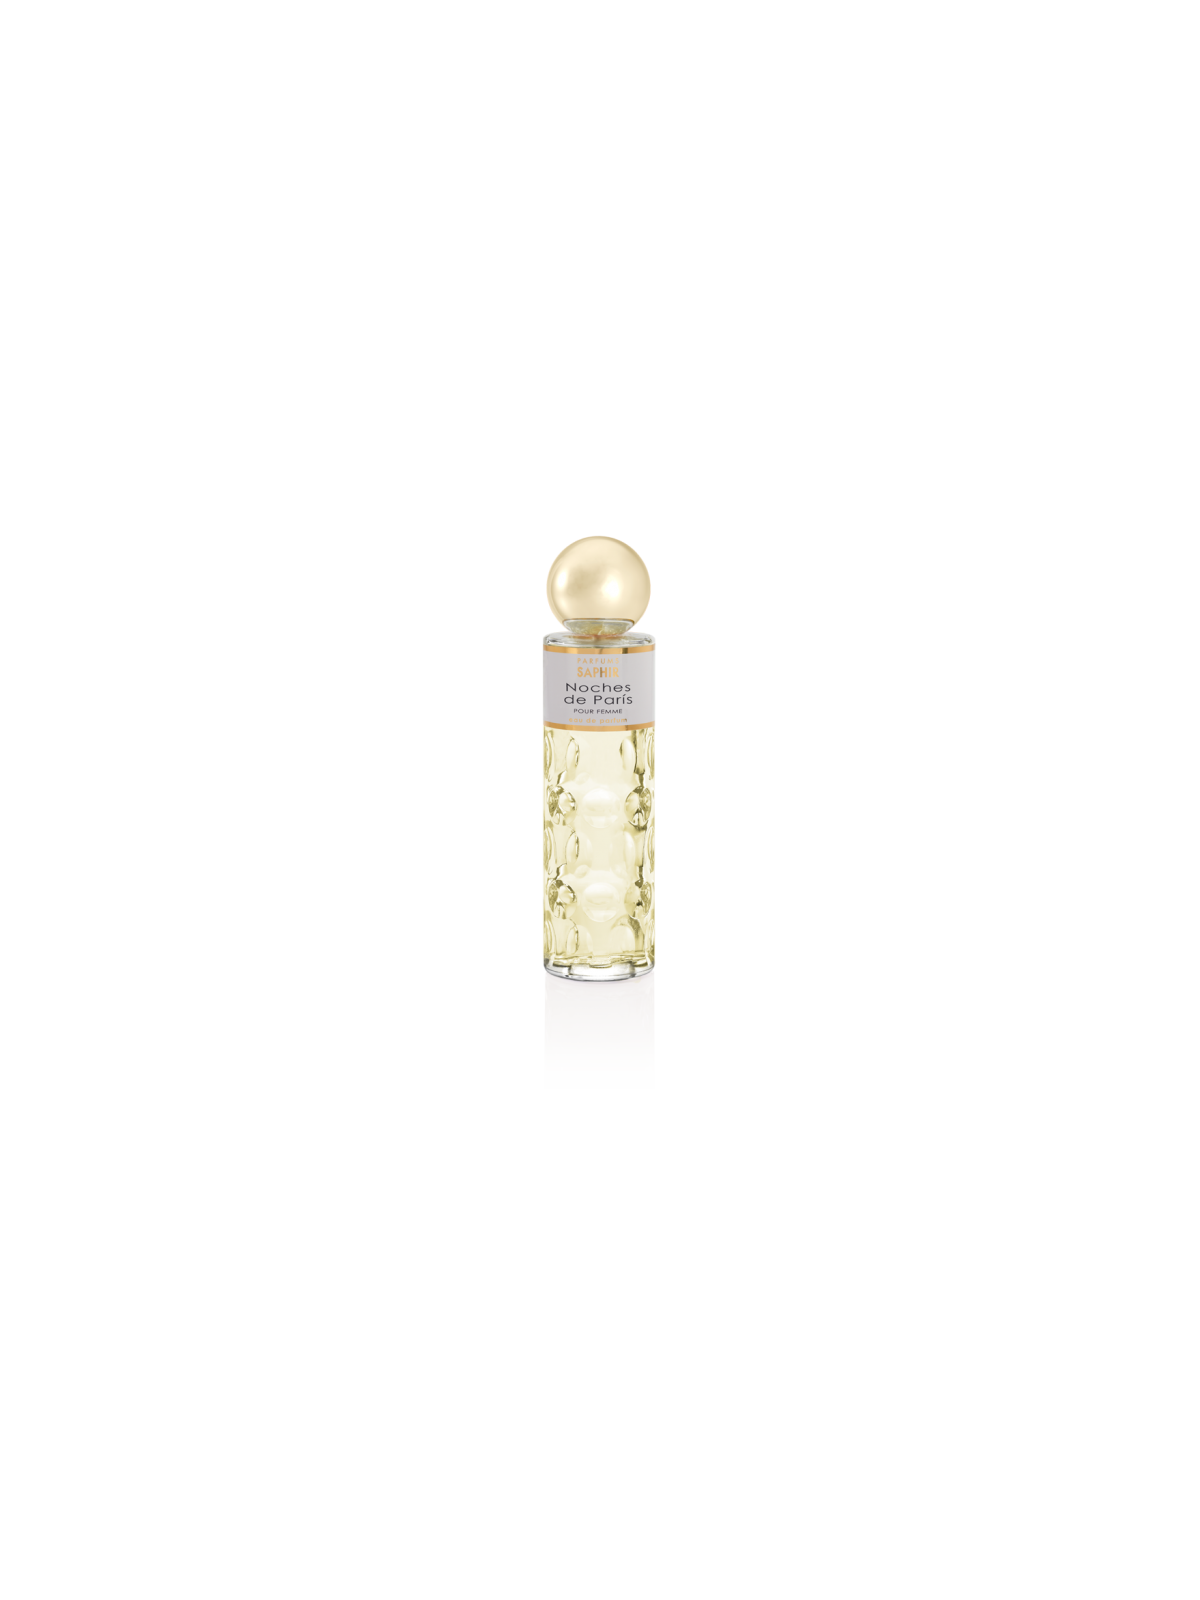 Comprar Perfume SAPHIR Noches de París 200ml. en Perfumes para mujer por sólo 13,90 € o un precio específico de 13,90 € en Thalie Care